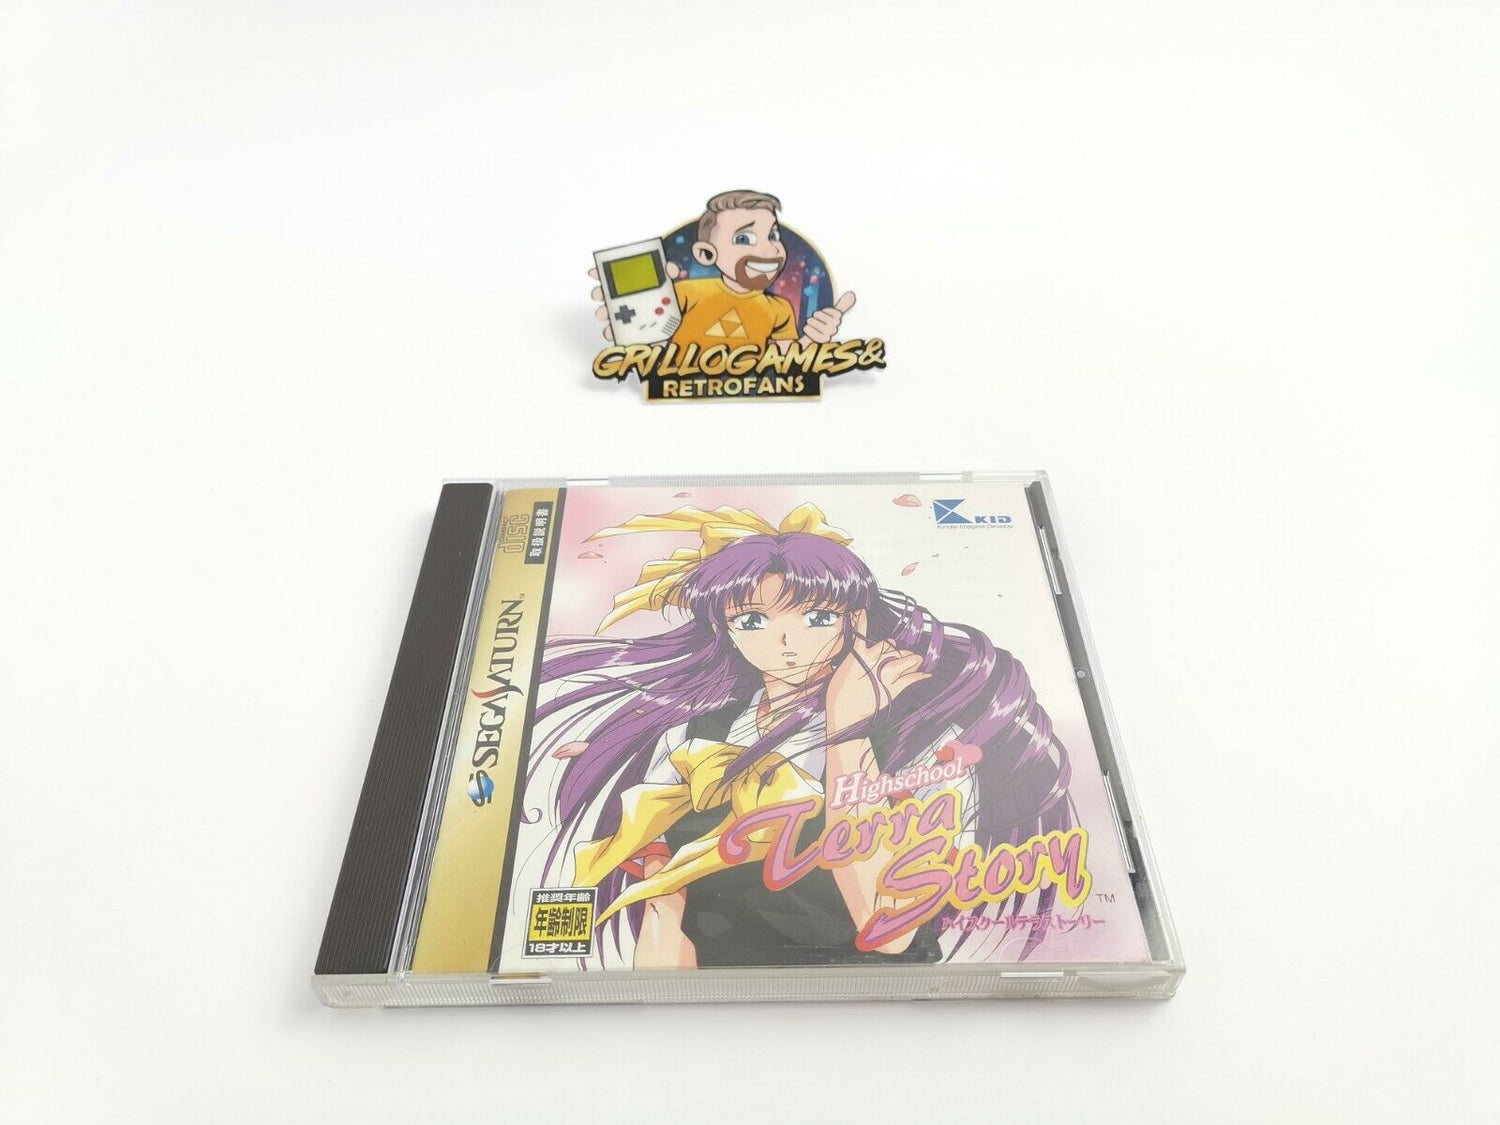 Sega Saturn Game 